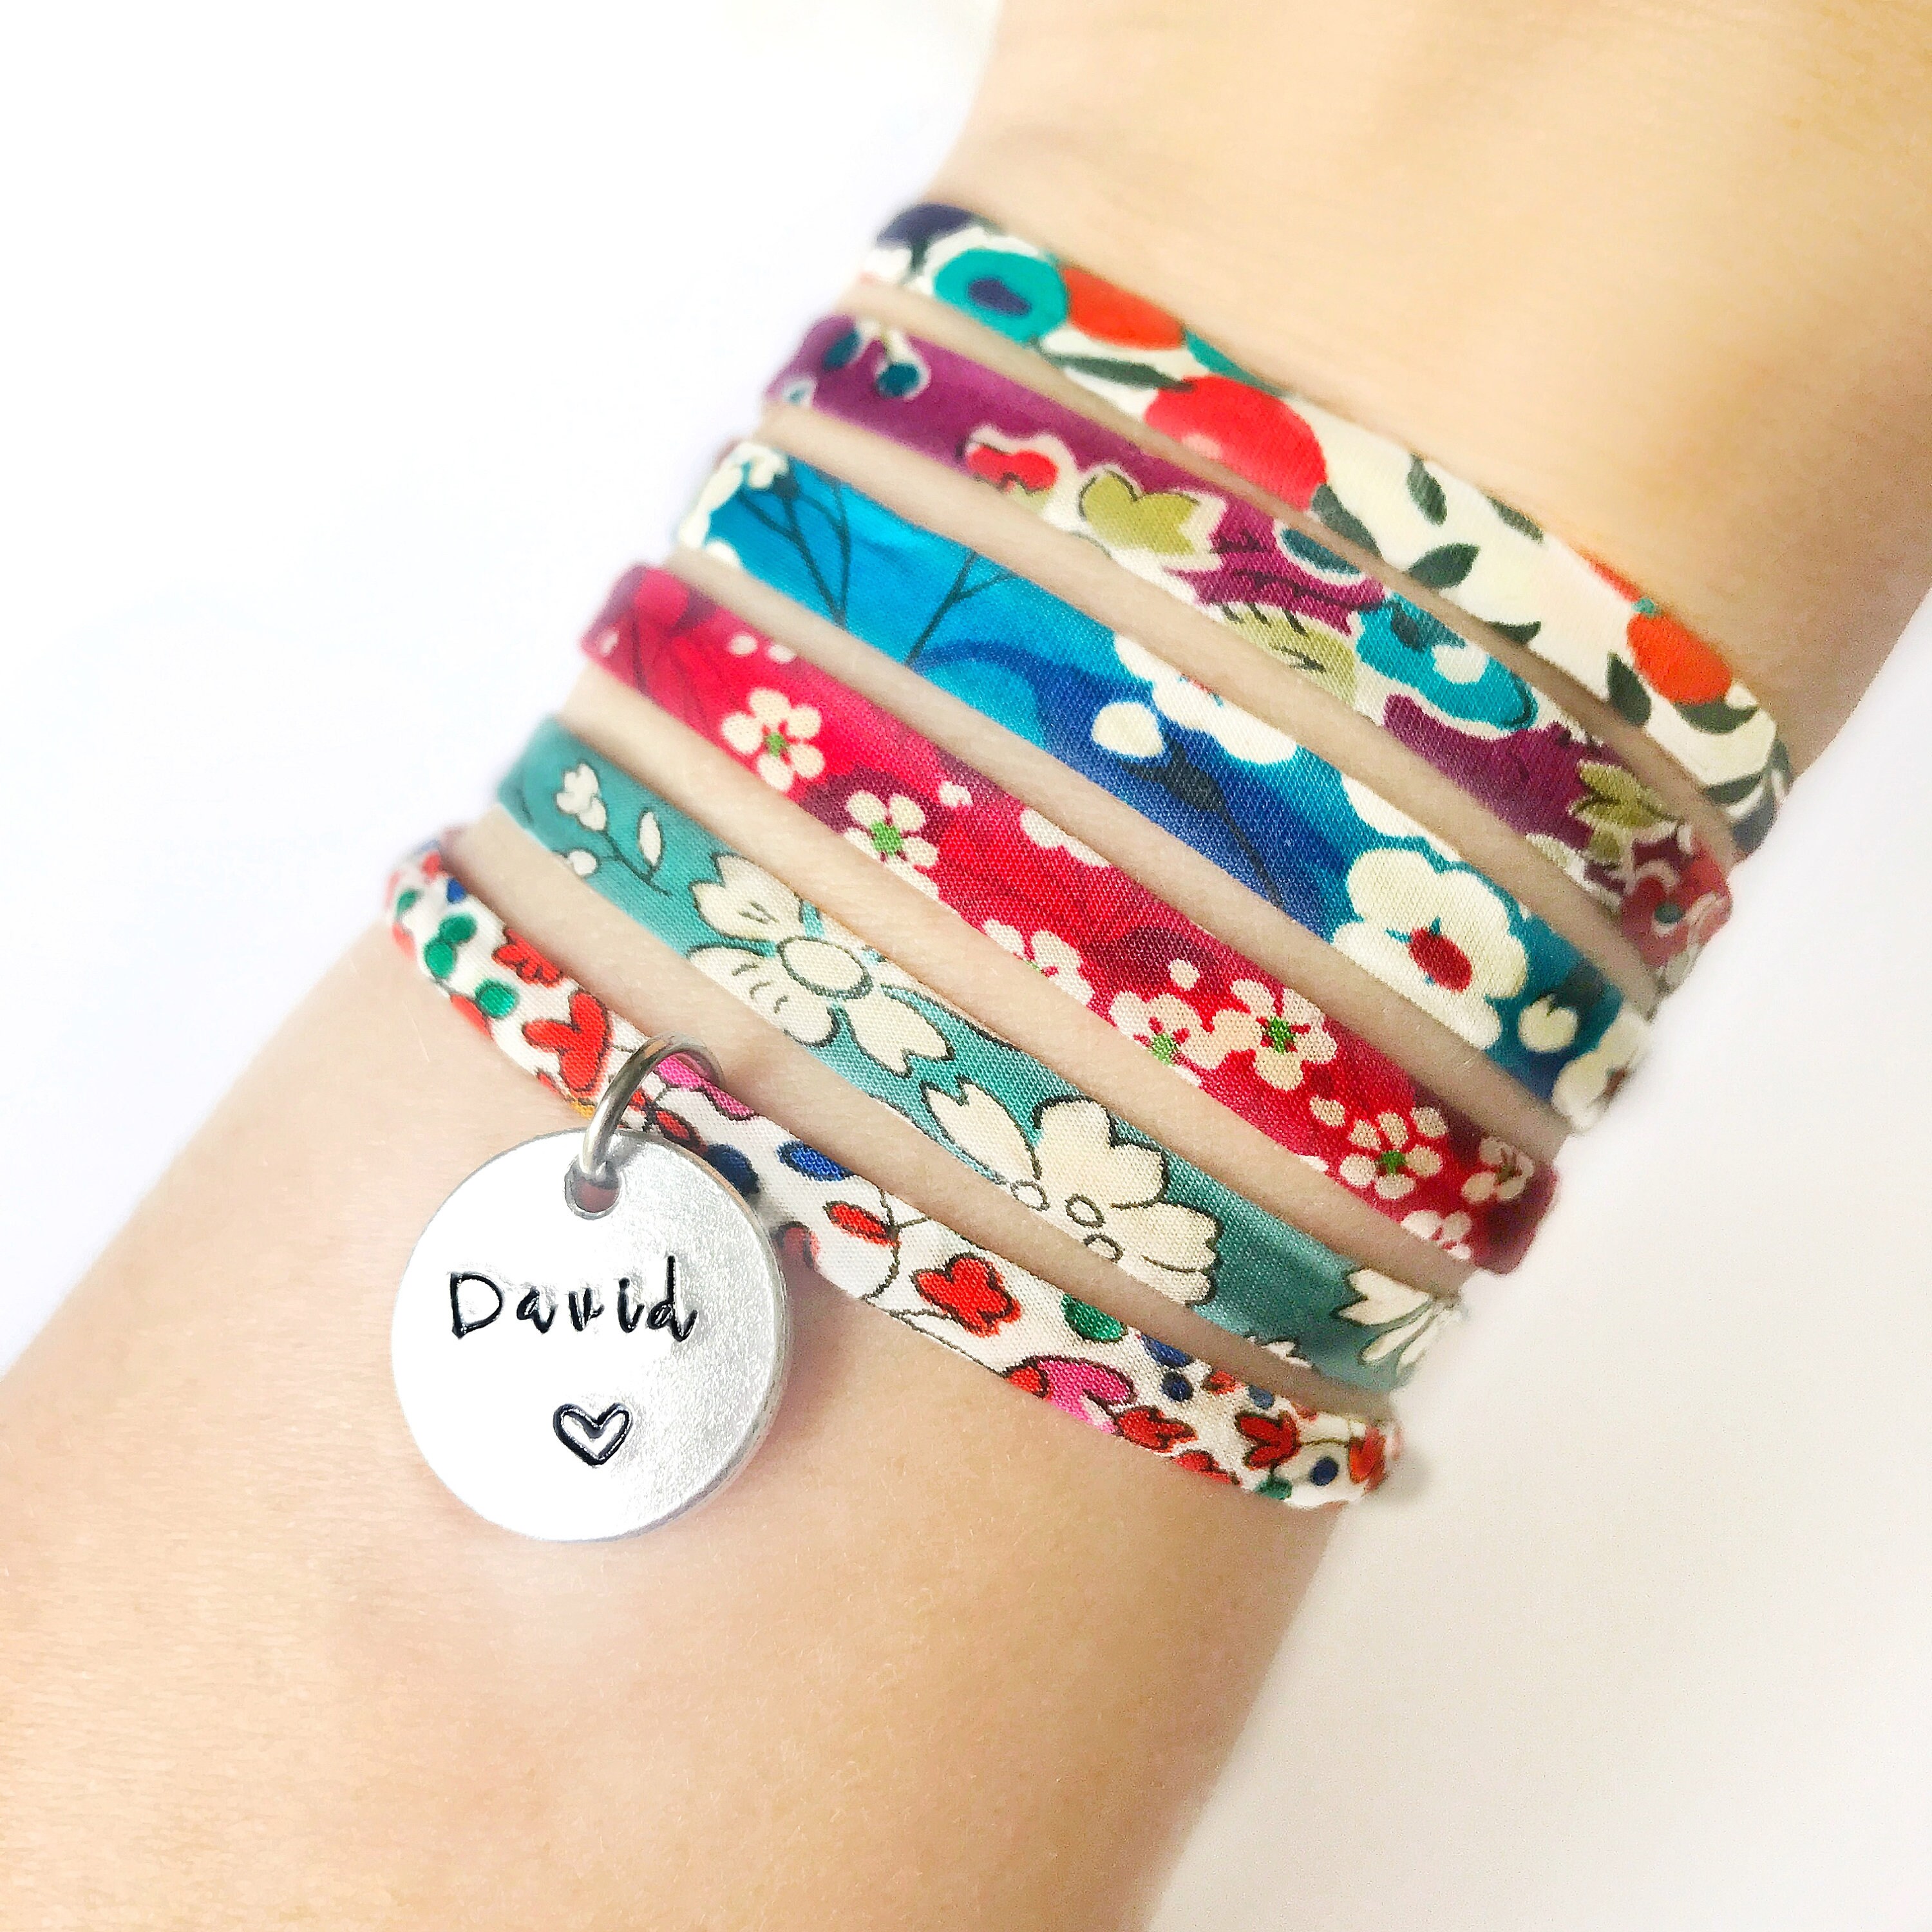 Buy Liberty print bracelet personalised initial